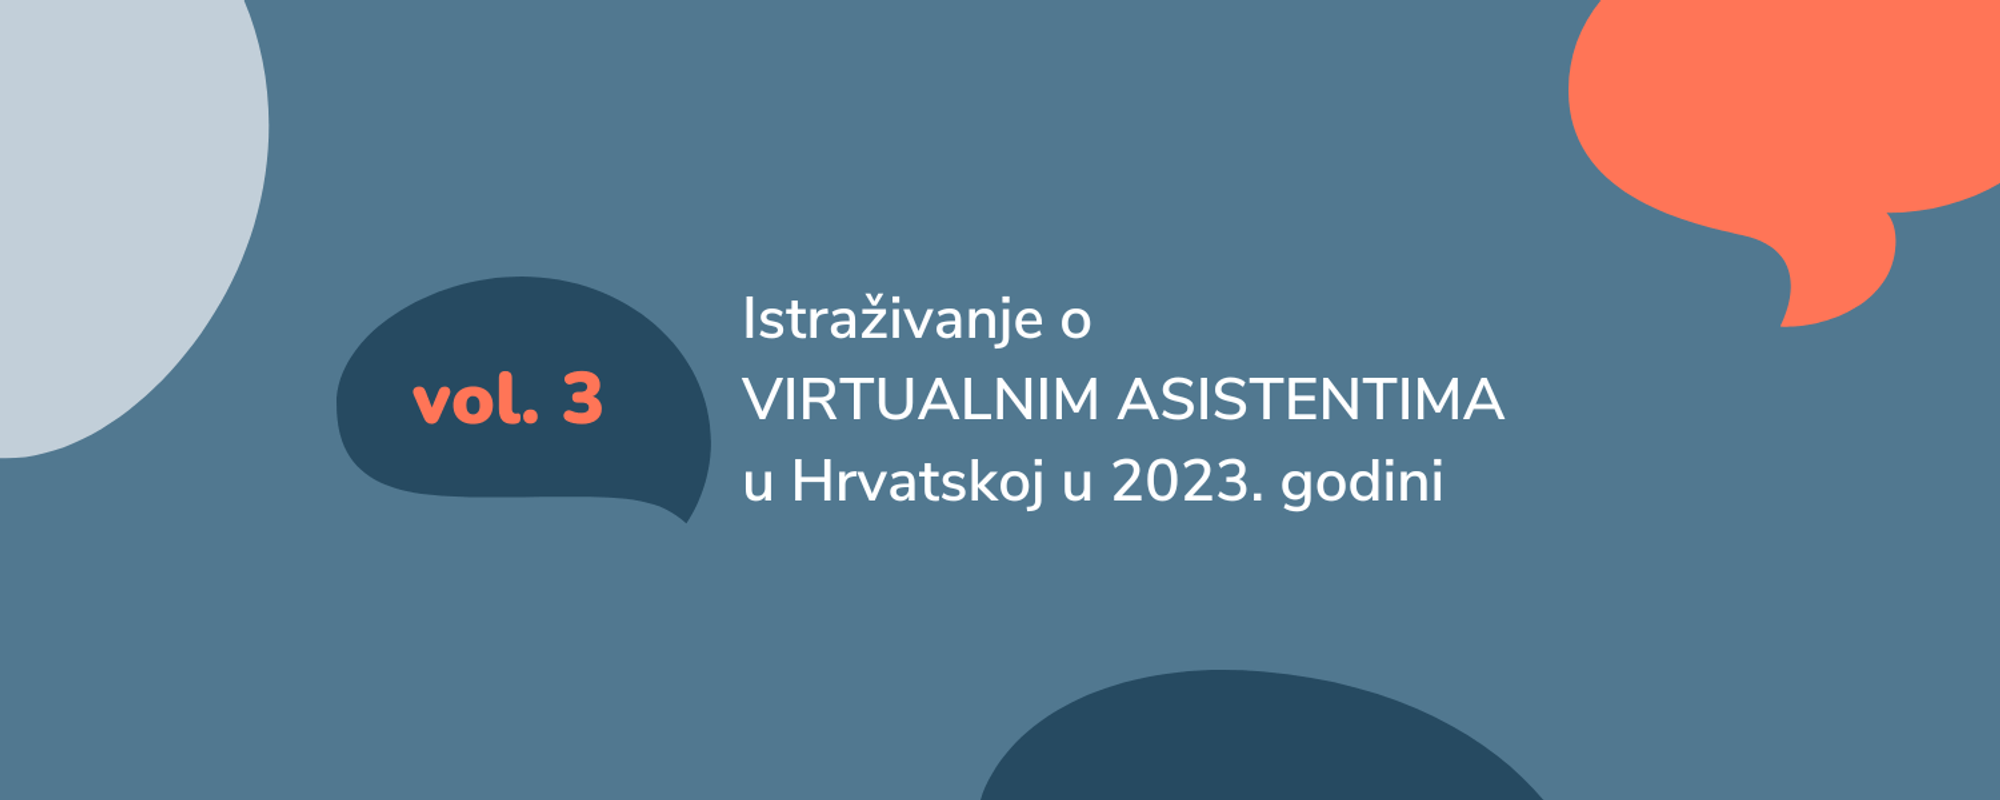 Istraživanje o virtualnim asistentima u Hrvatskoj (vol. 3, 2023. godina)